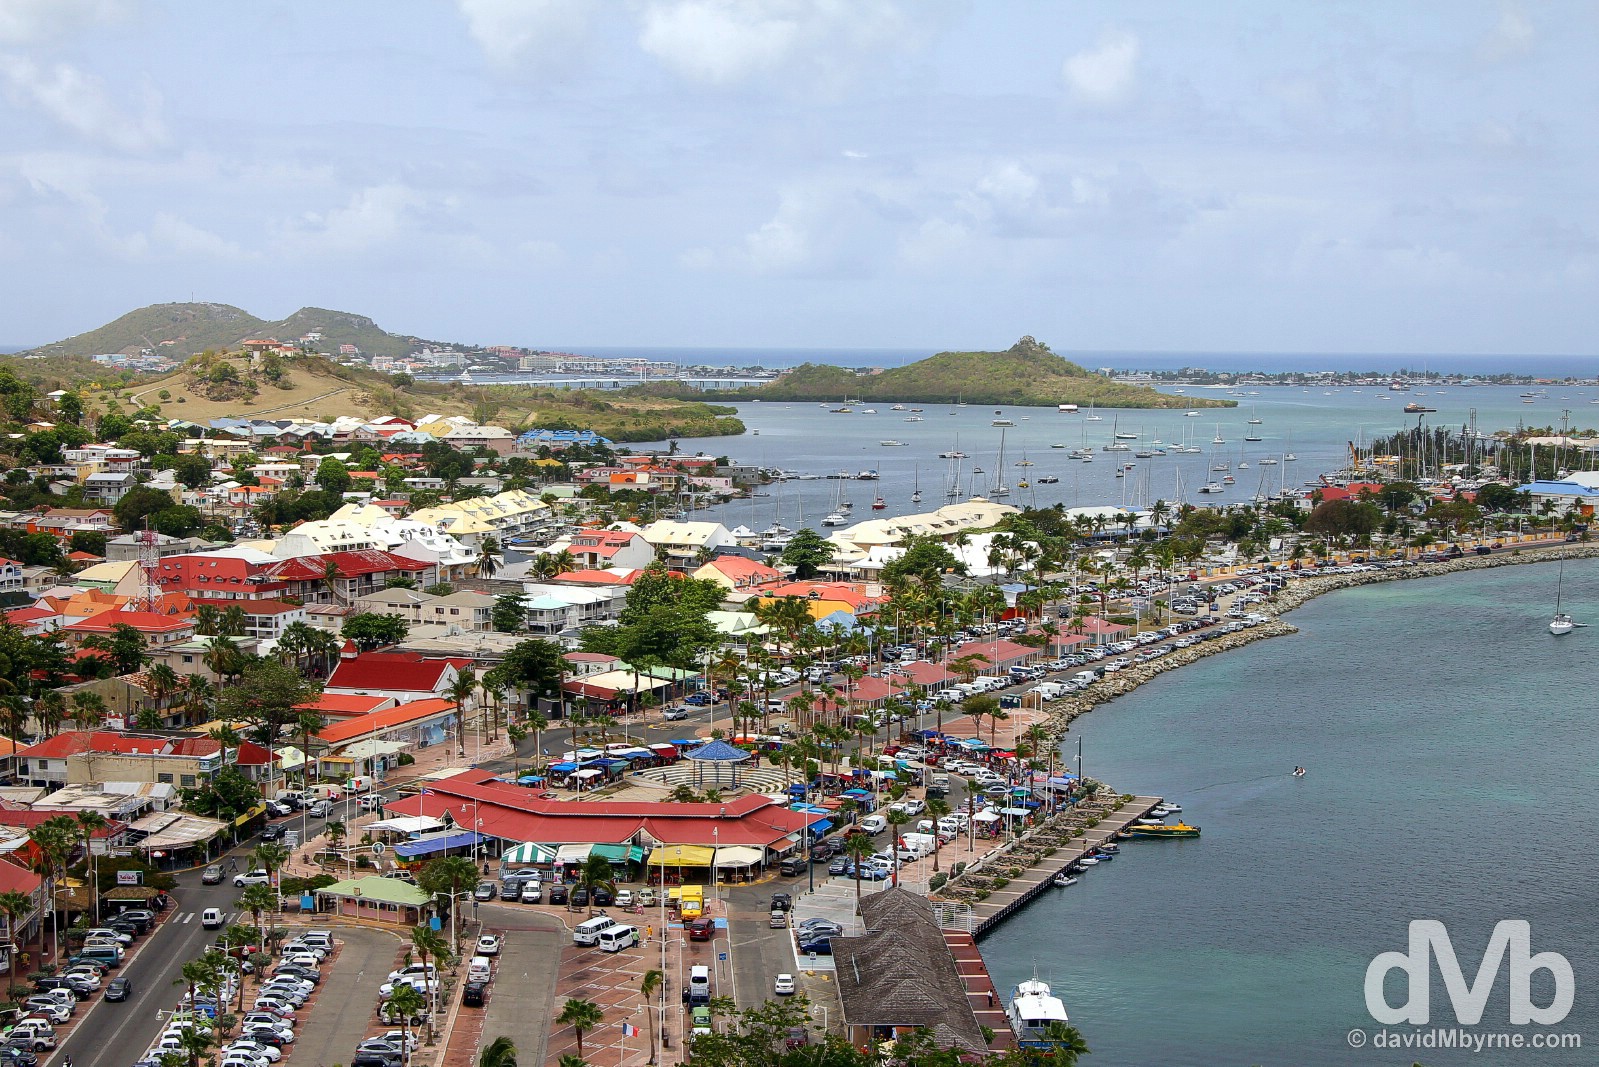 Marigot as seen from Fort Louis. Saint Martin, Lesser Antilles. June 8, 2015.